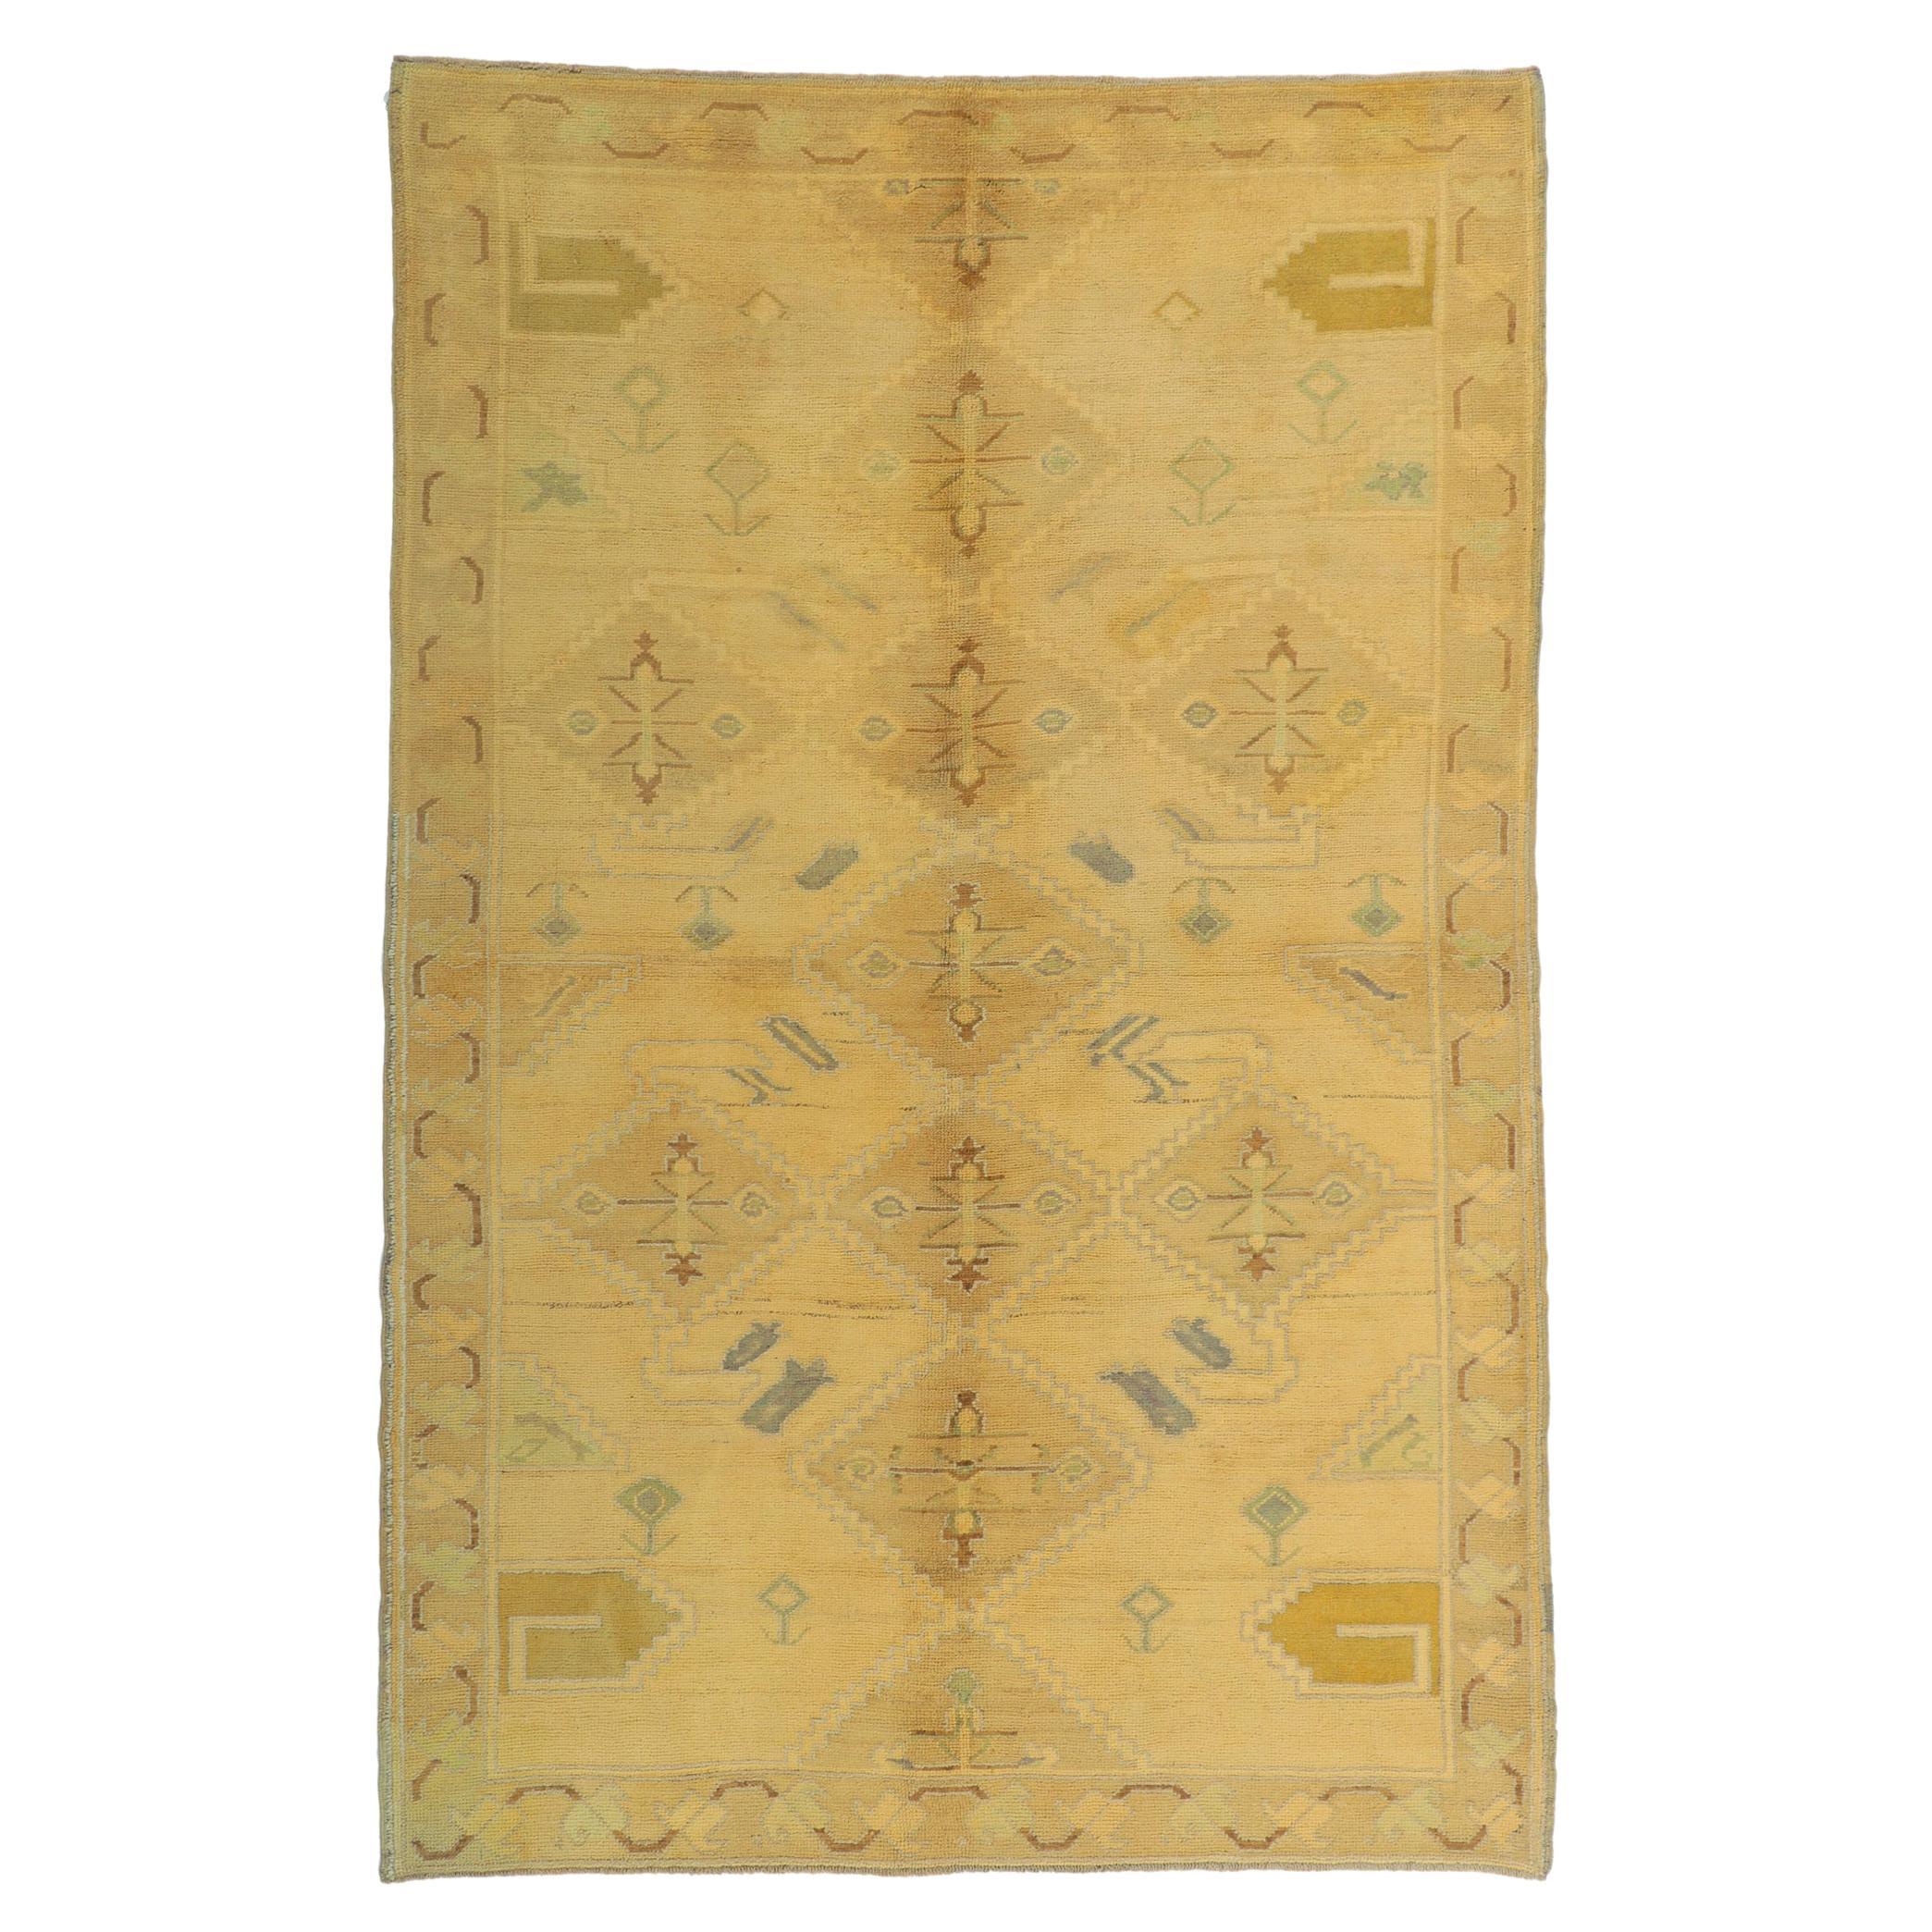 Türkischer Oushak-Teppich im Vintage-Stil mit weichen, pastellfarbenen Erdtönen